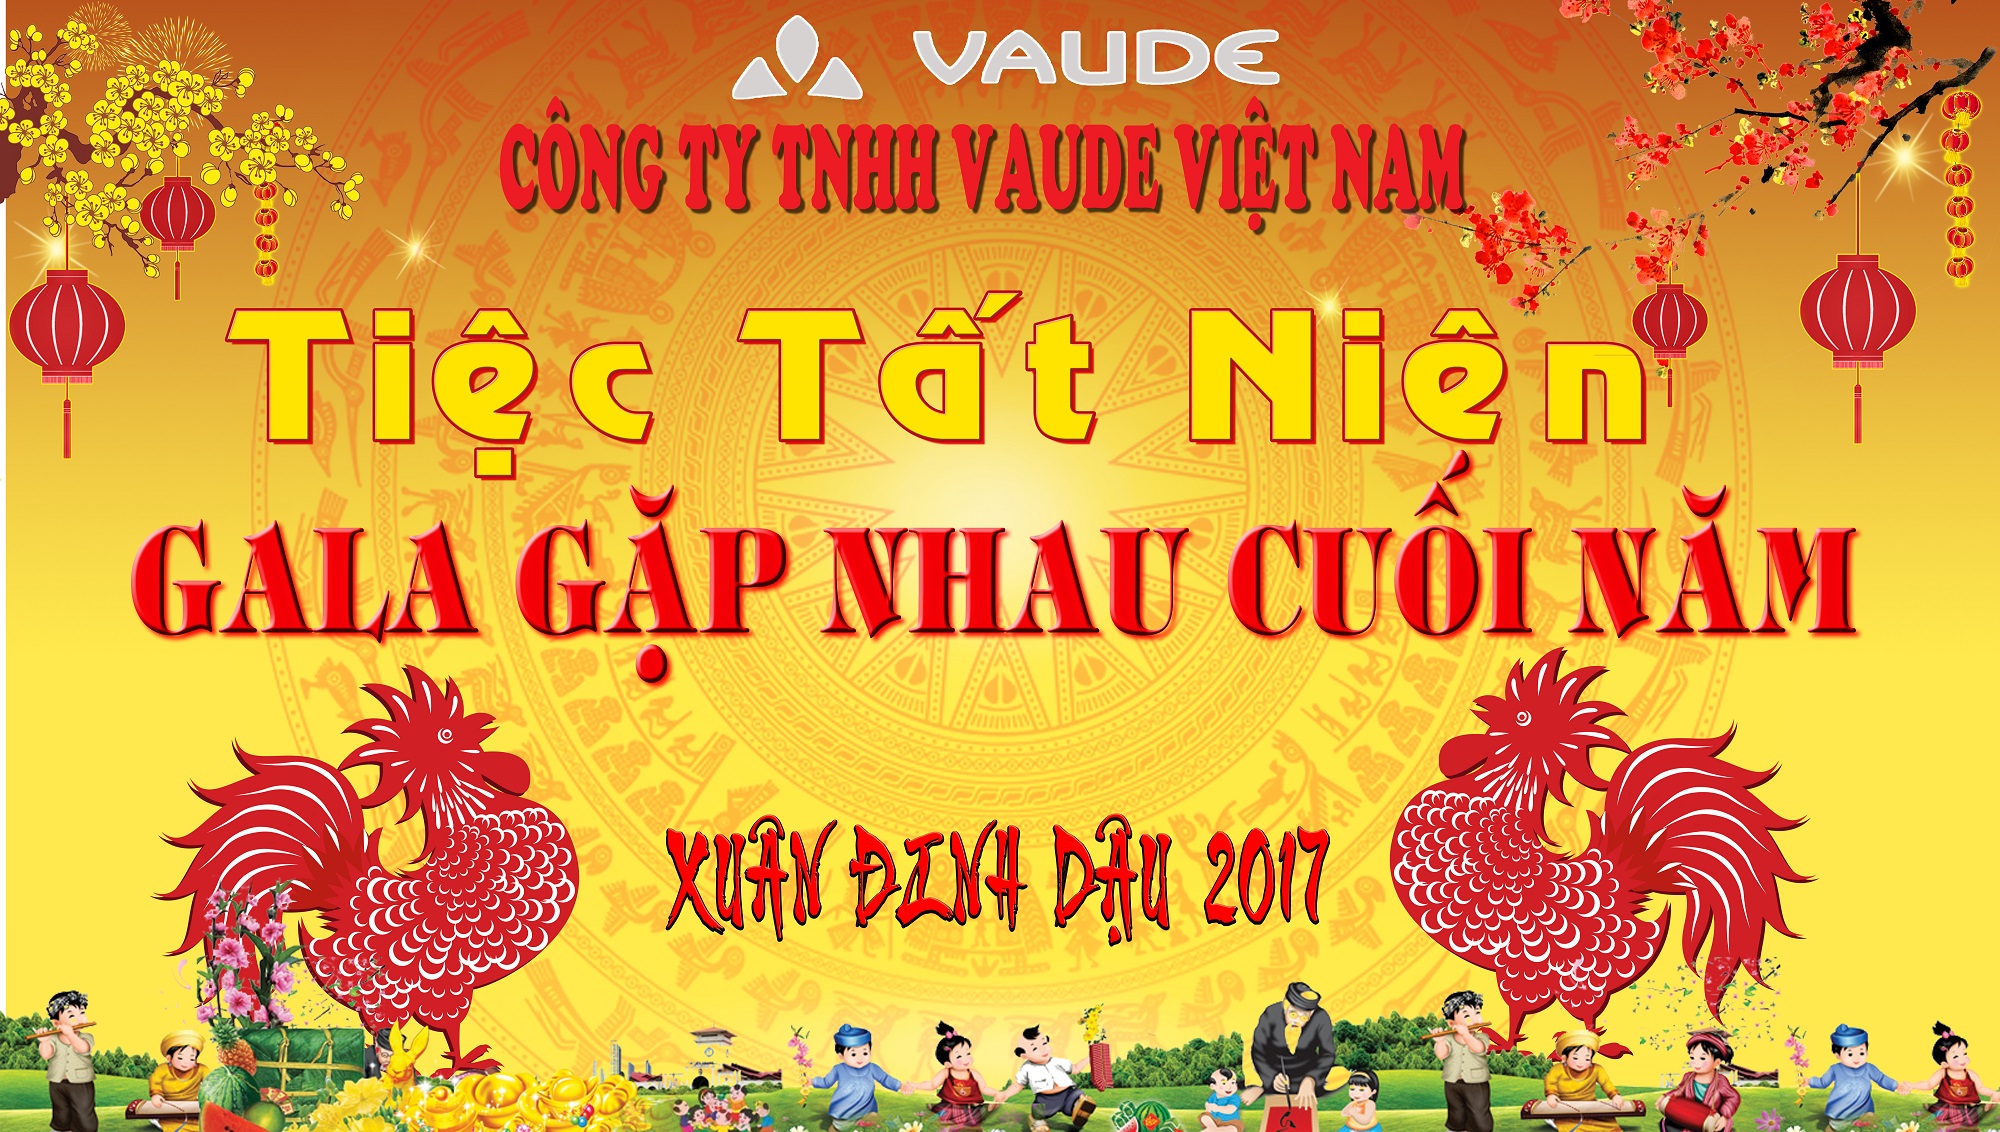 Tiệc Tất Niên của Công ty TNHH Vaude Việt Nam